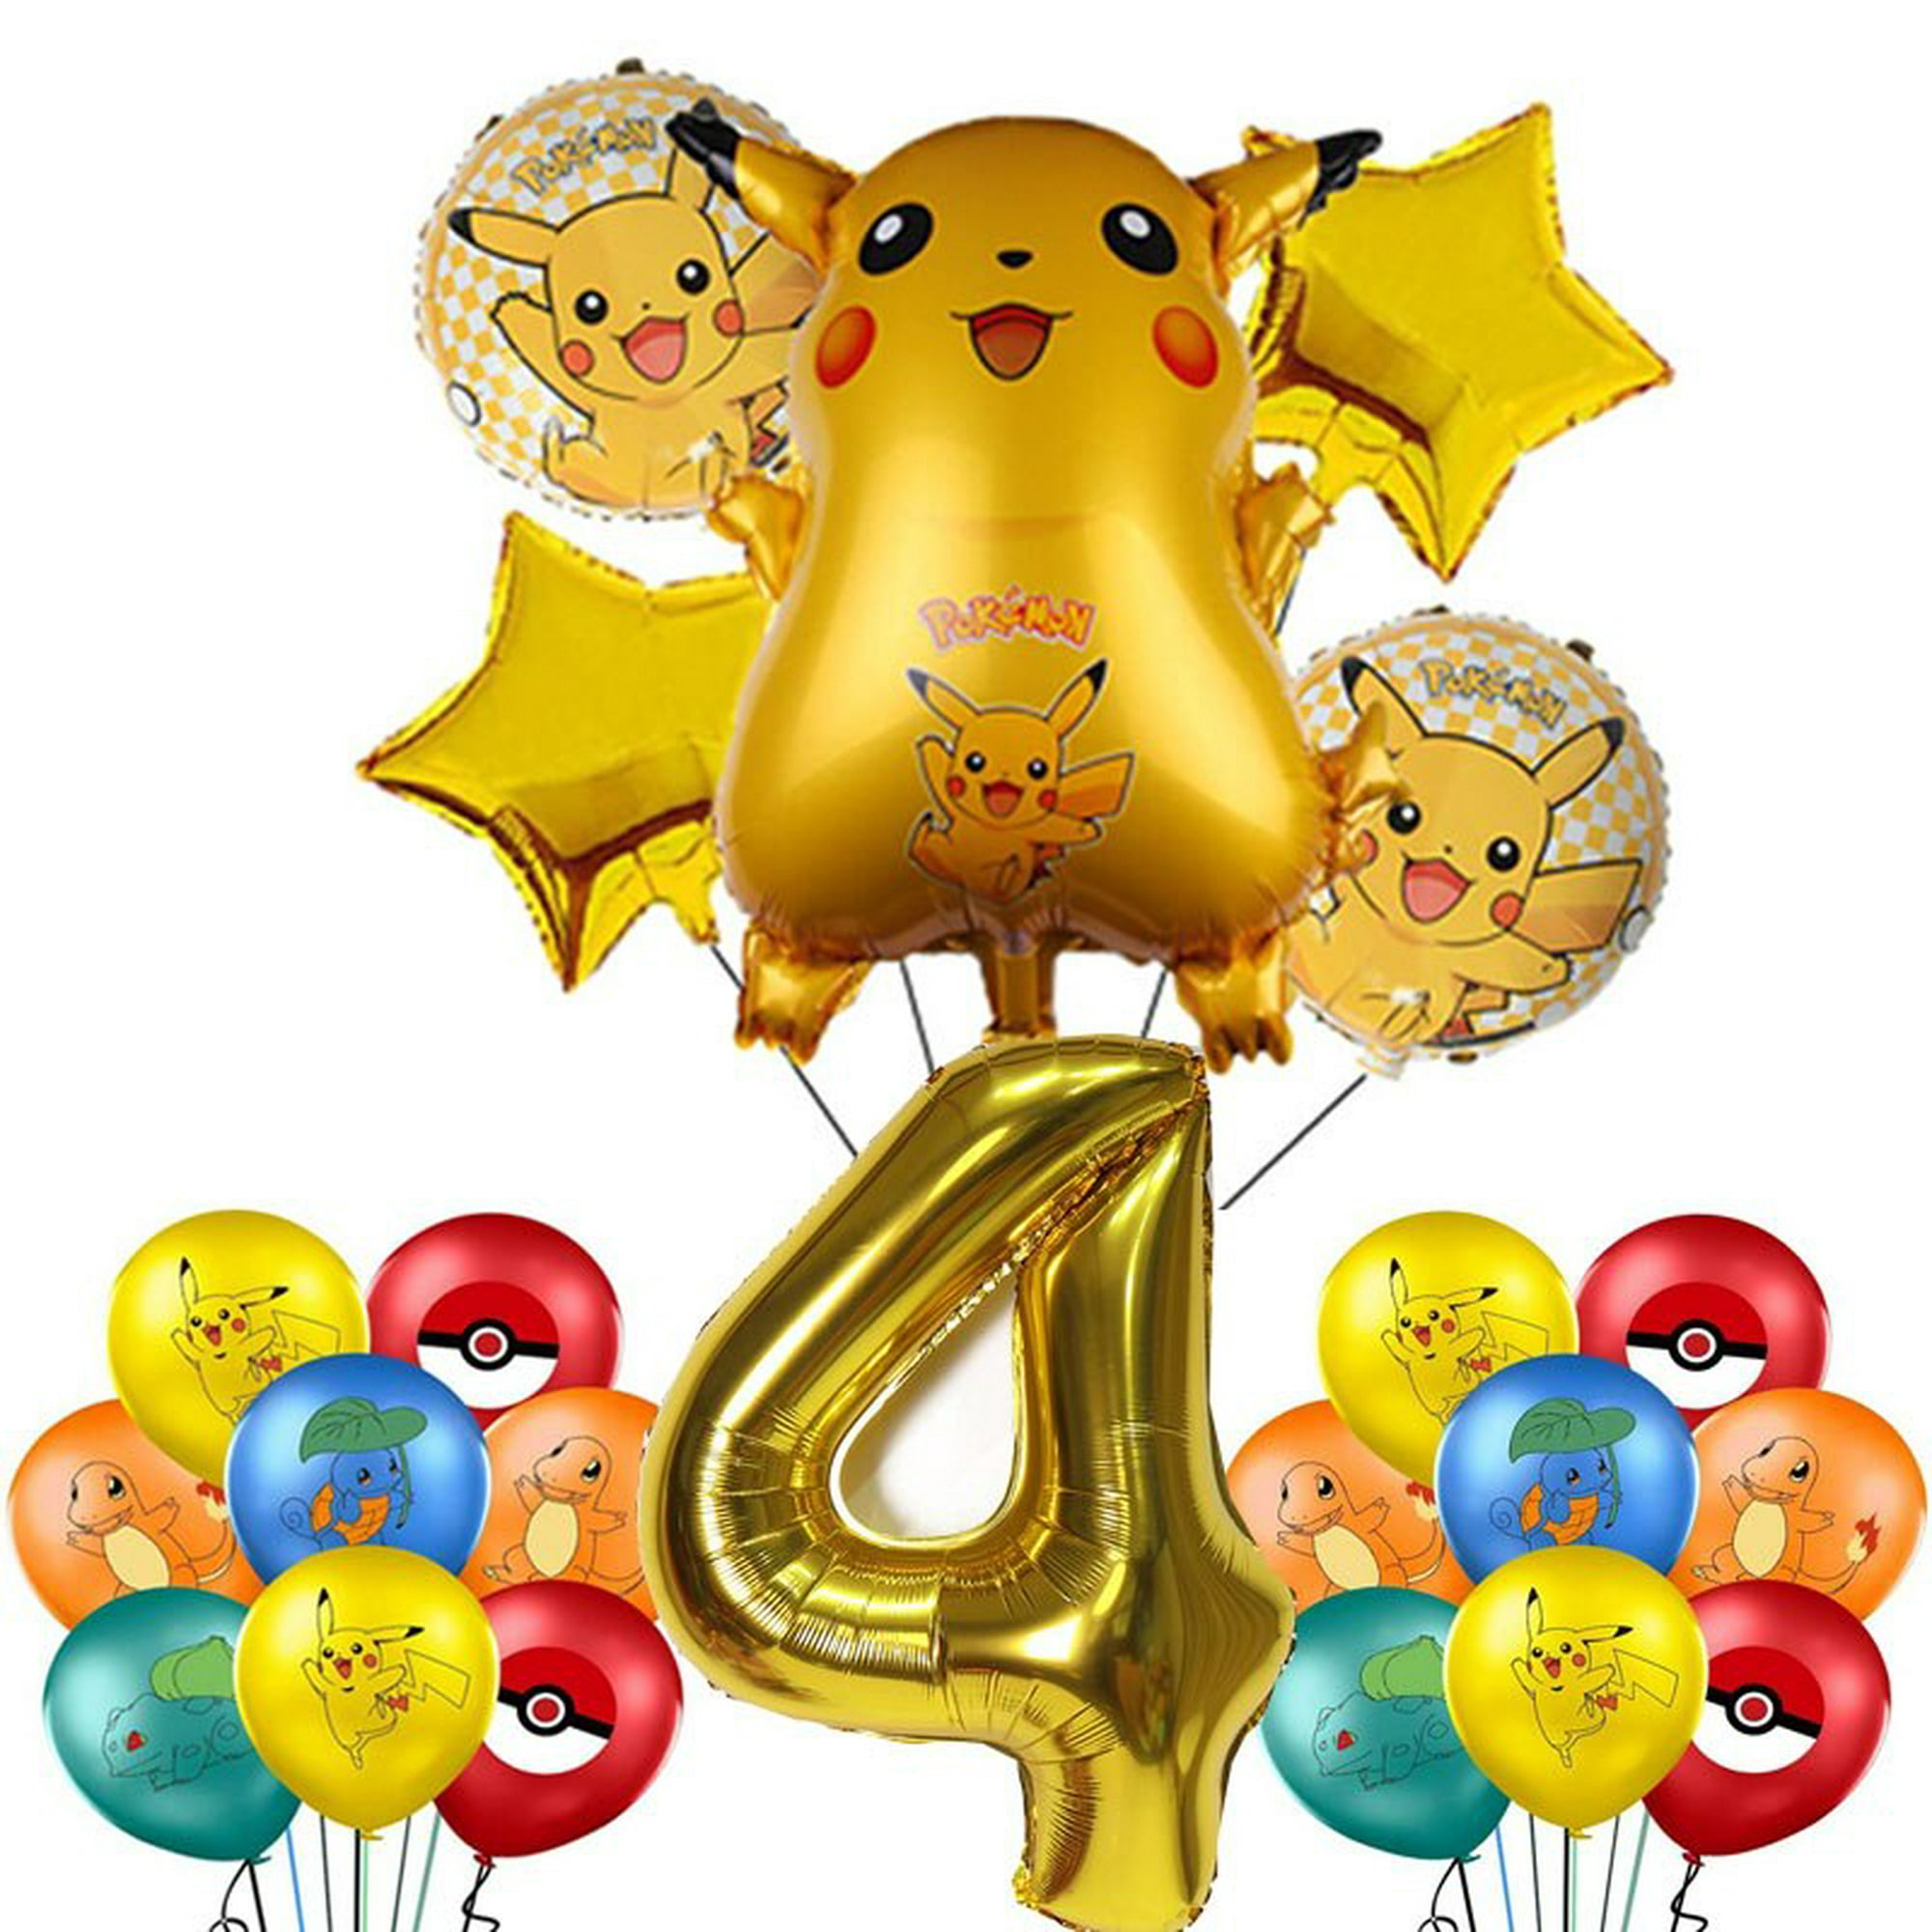 Decoración de fiesta de cumpleaños con temática de Pokémon Pikachu